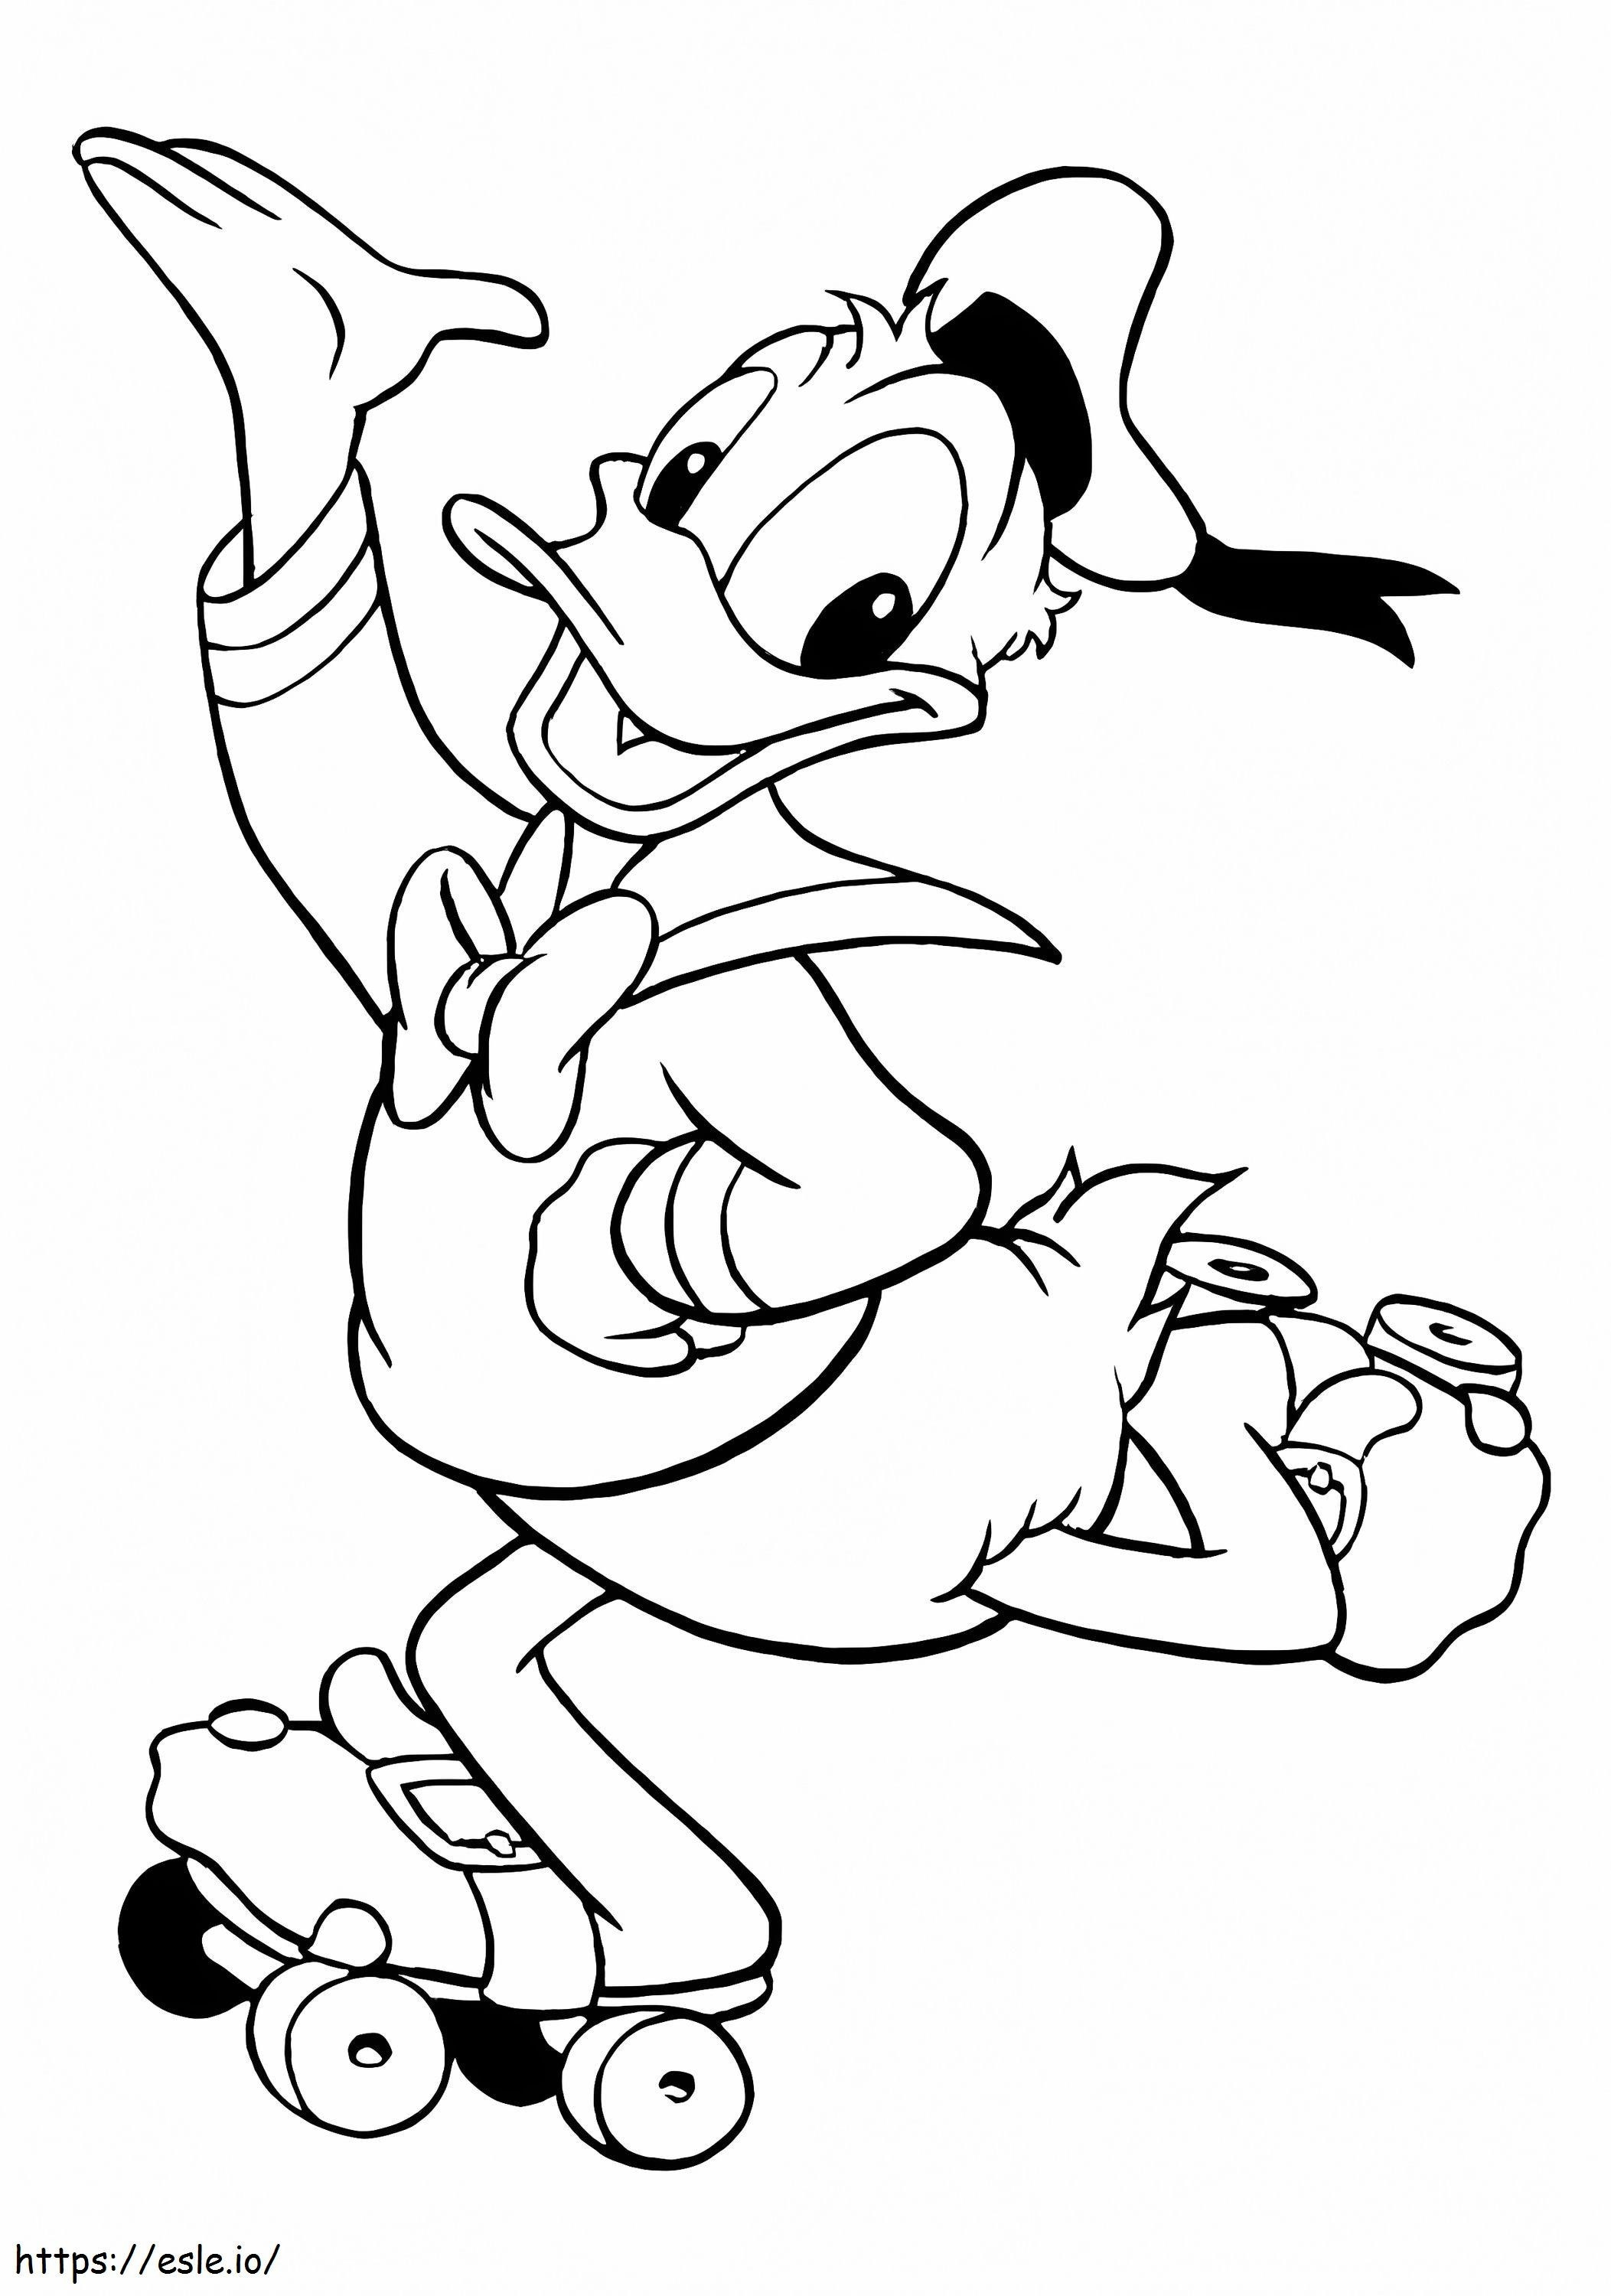 Coloriage Donald sur patin à roulettes à imprimer dessin